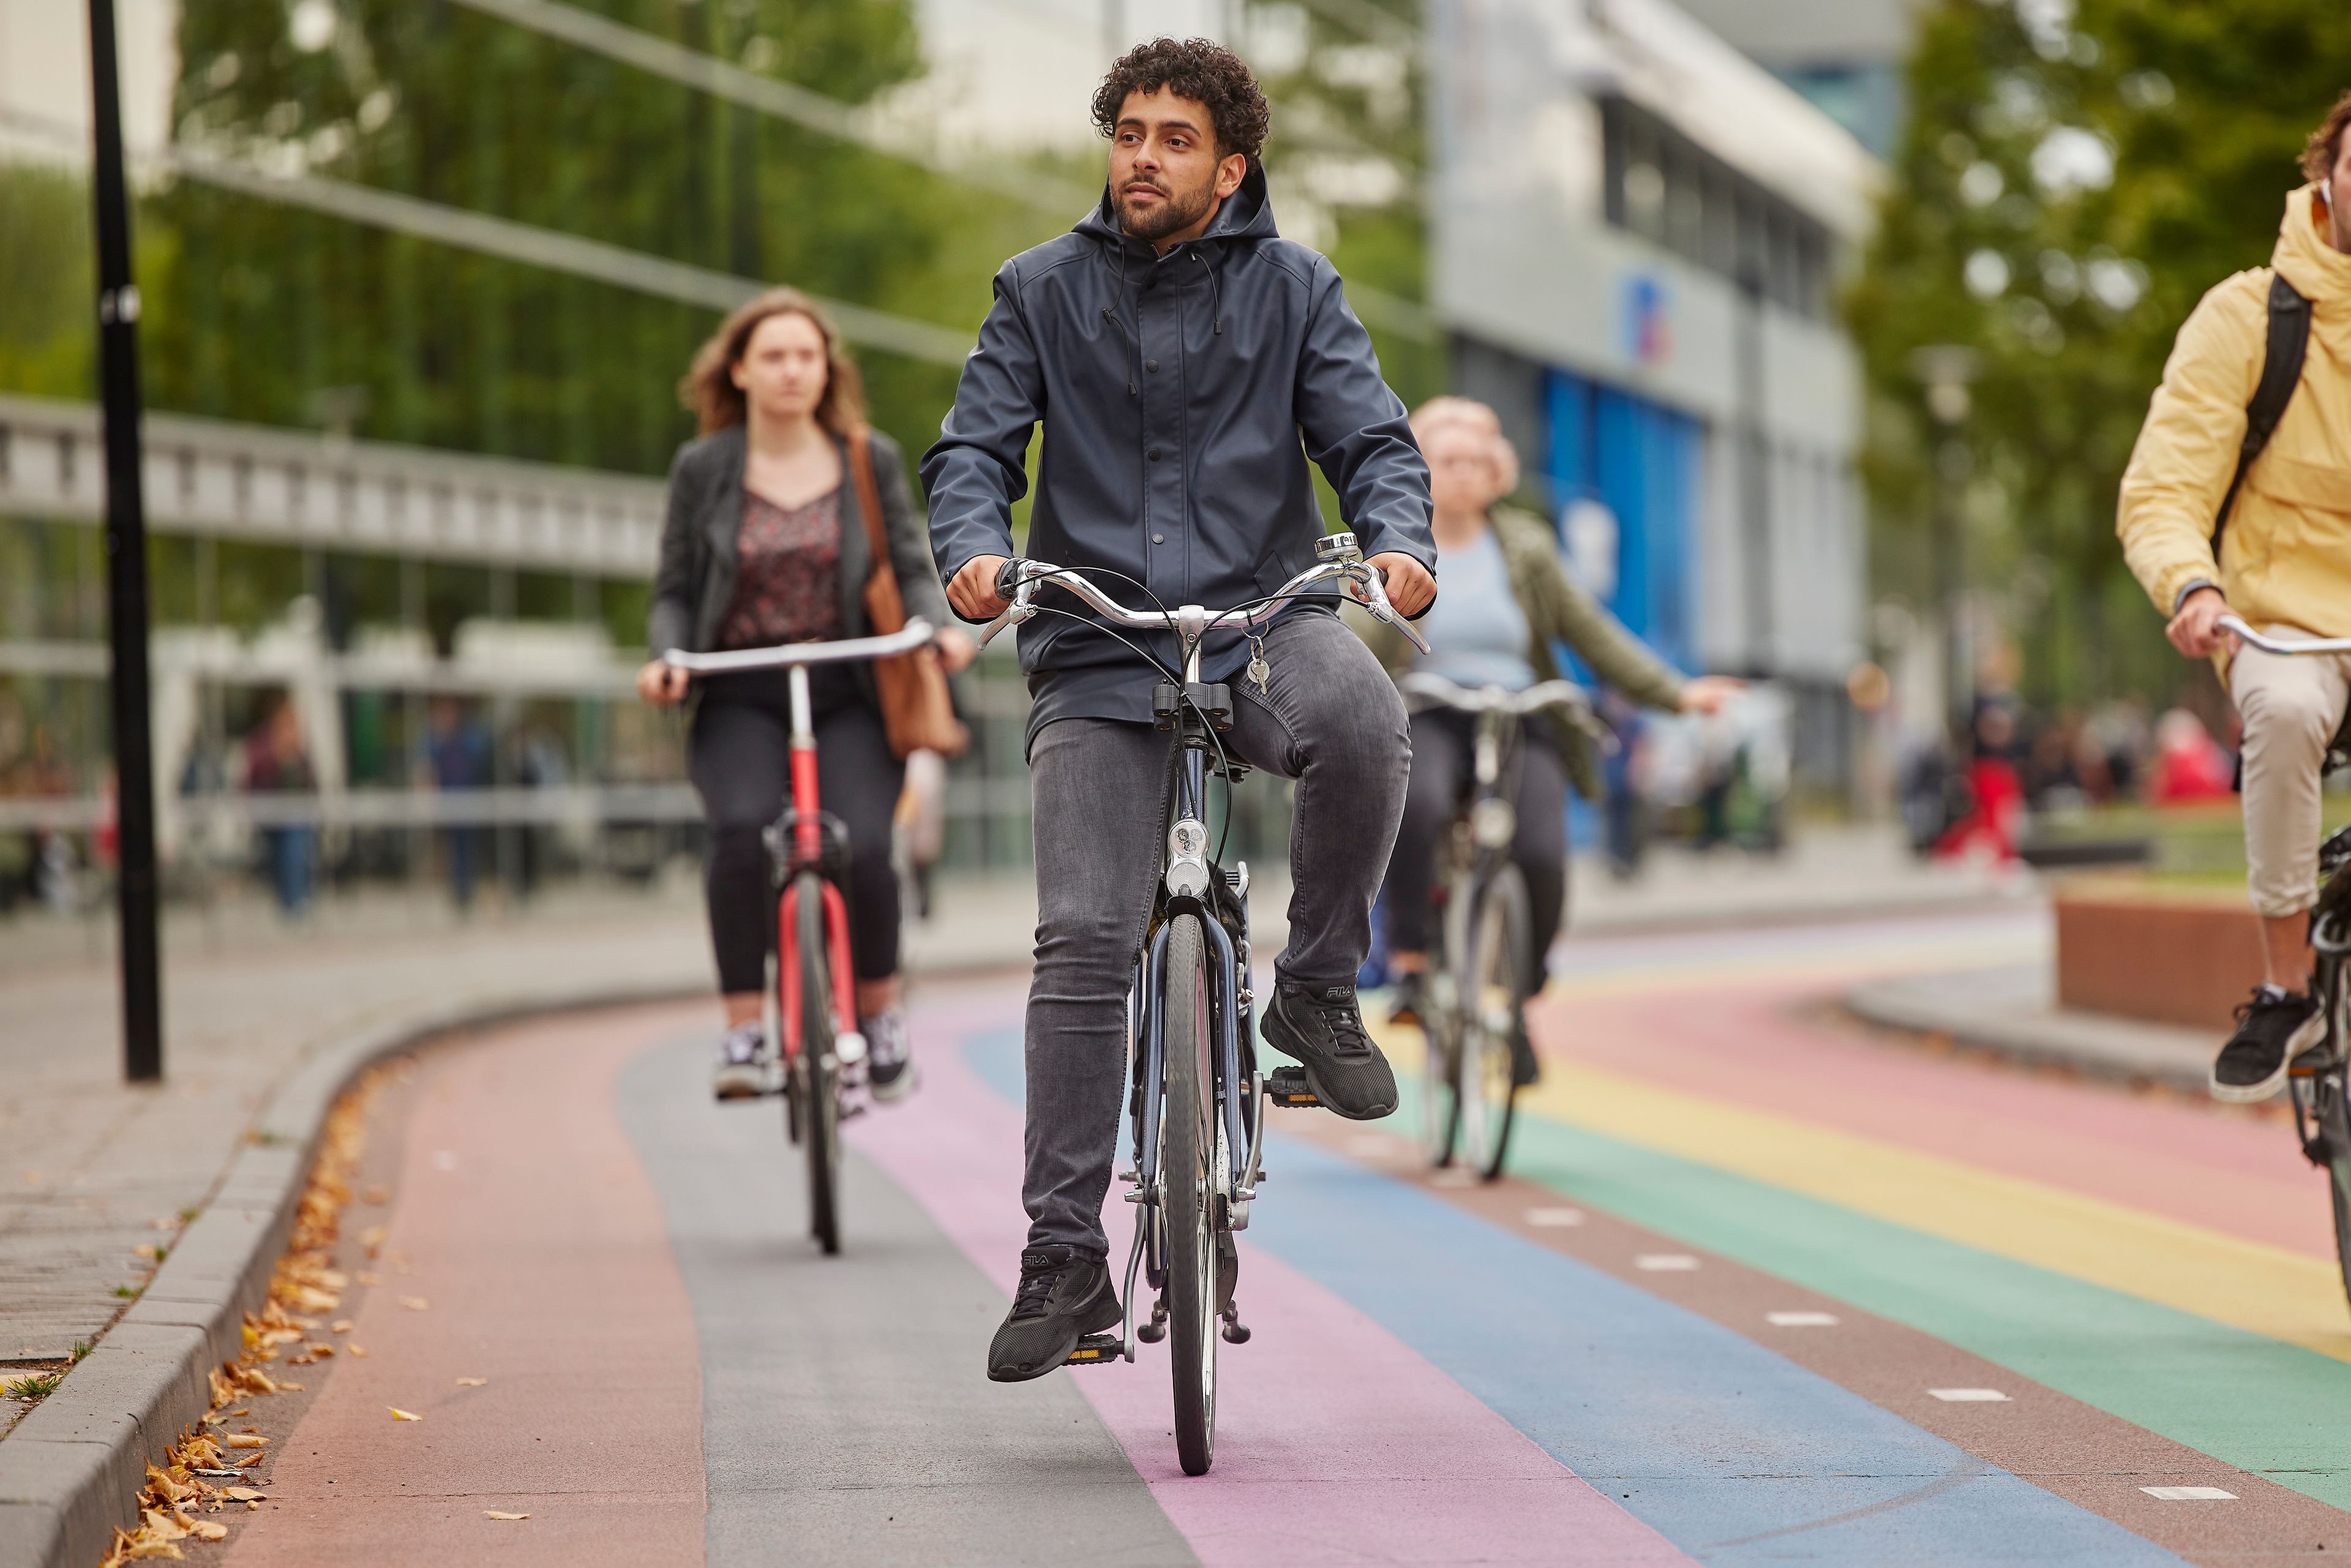 Meerdere fietsers rijden over een fietspad door de stad